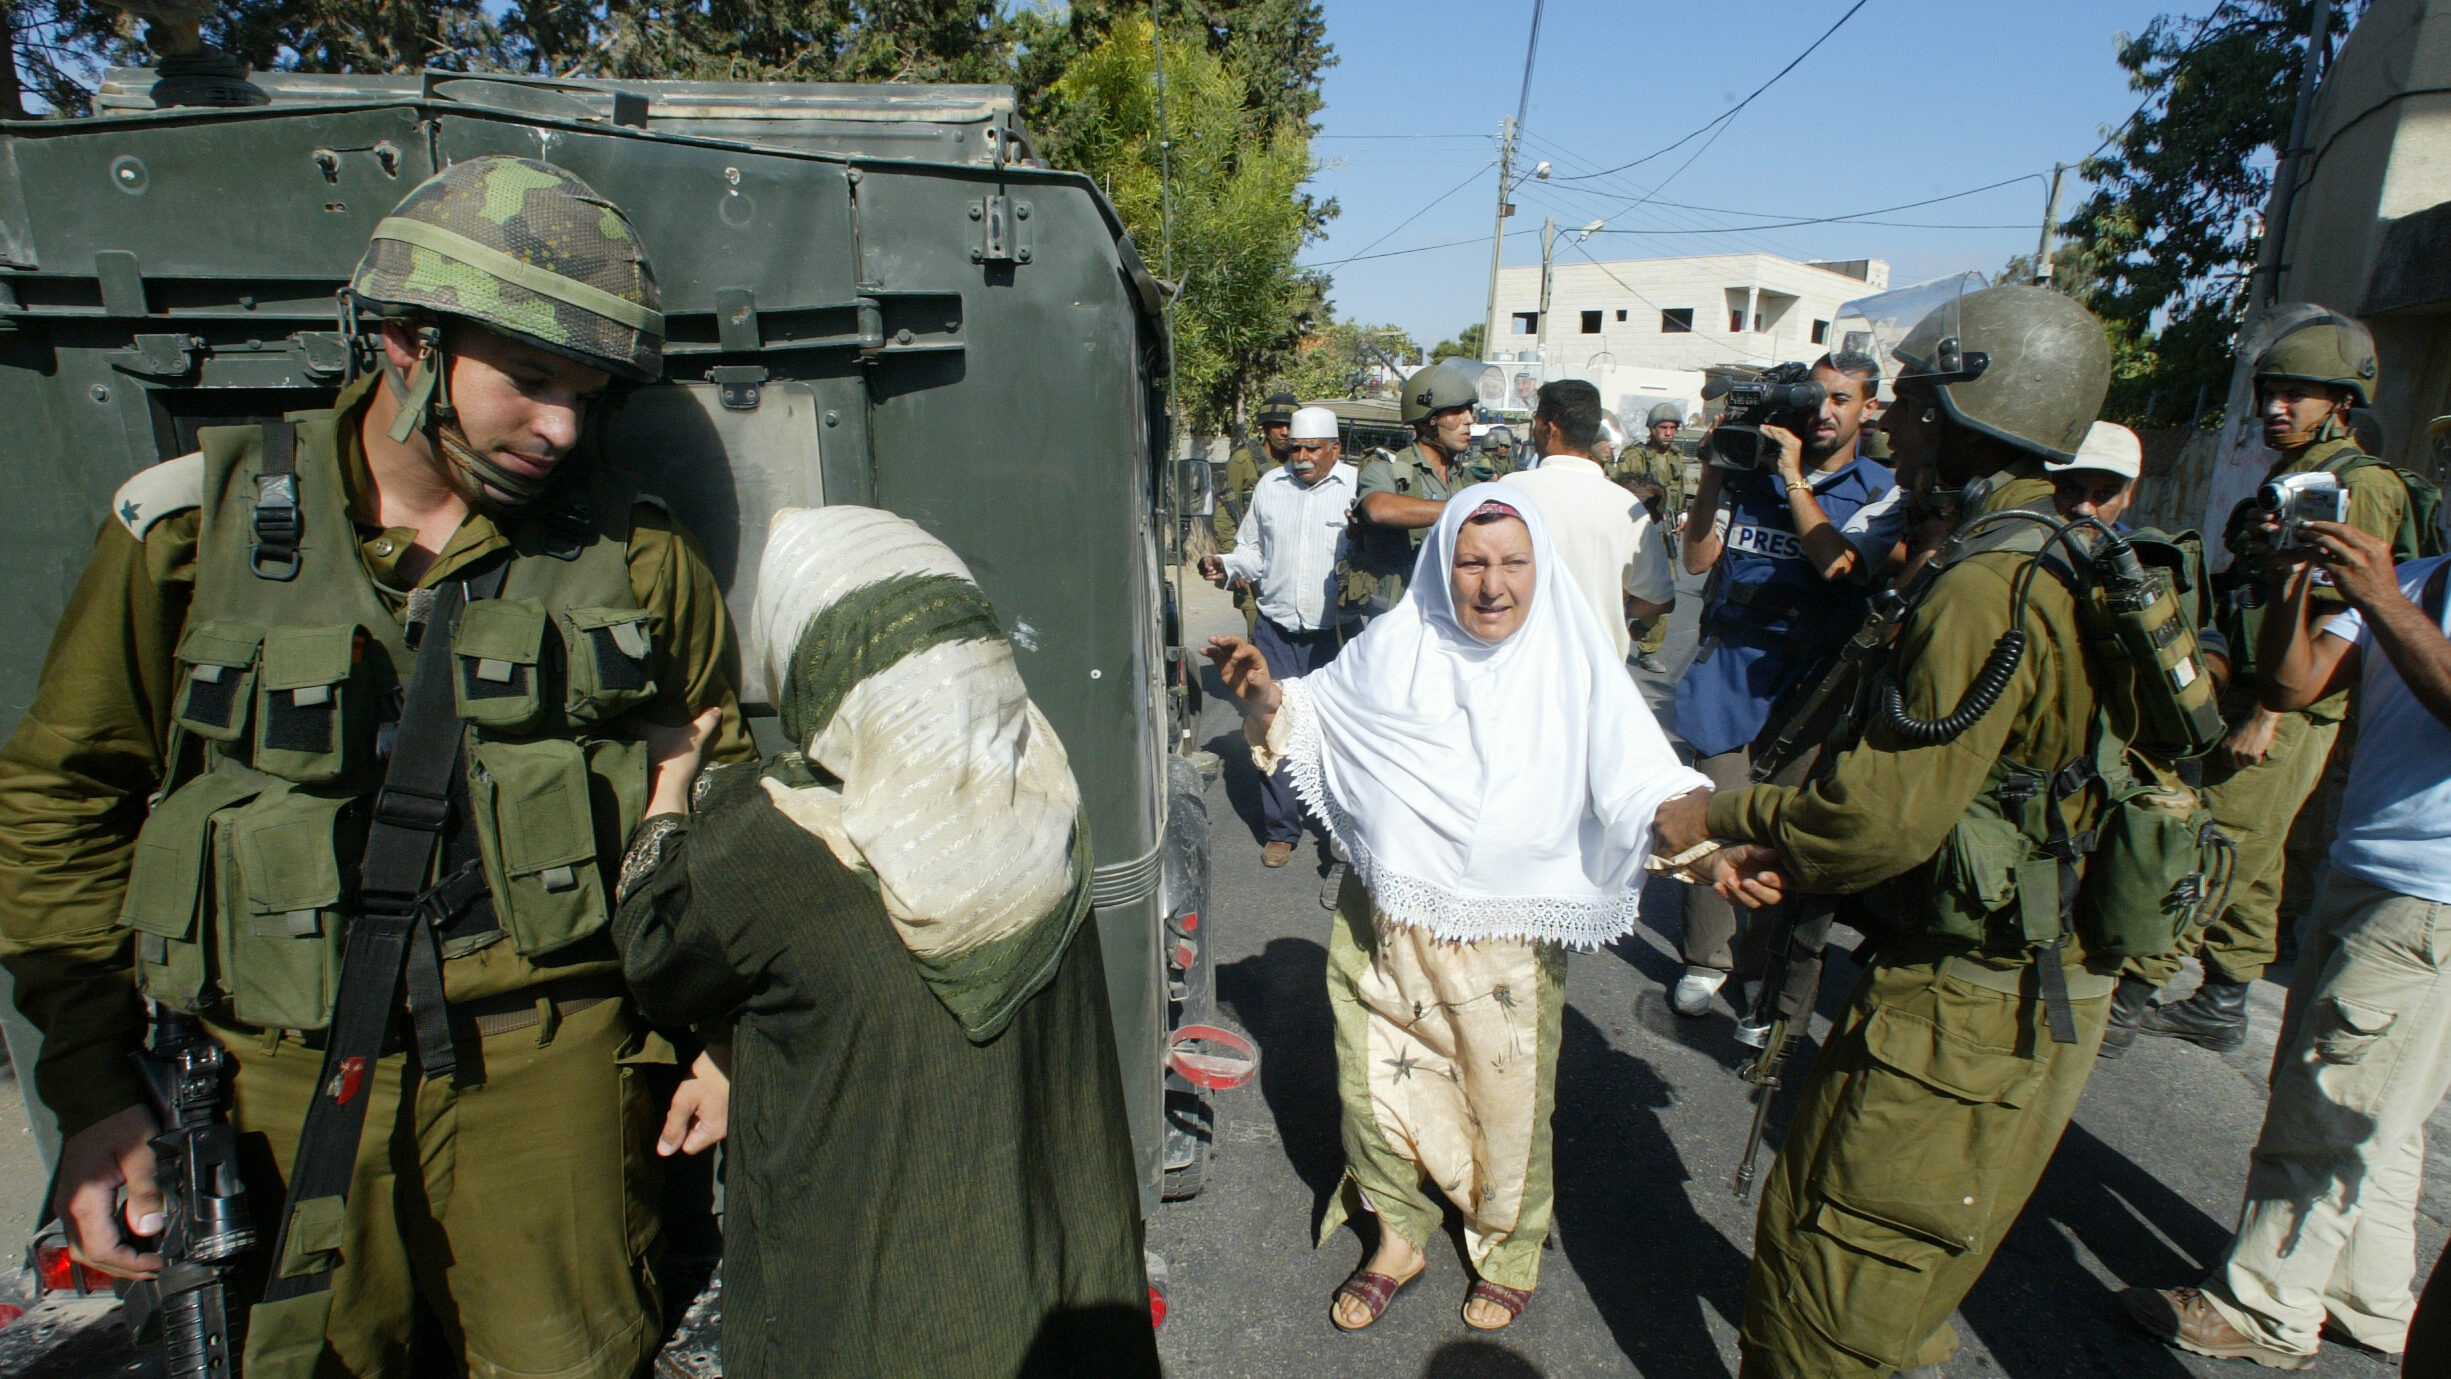 Bilde fra filmen 5 Broken cameras - soldater og palestinske kvinner